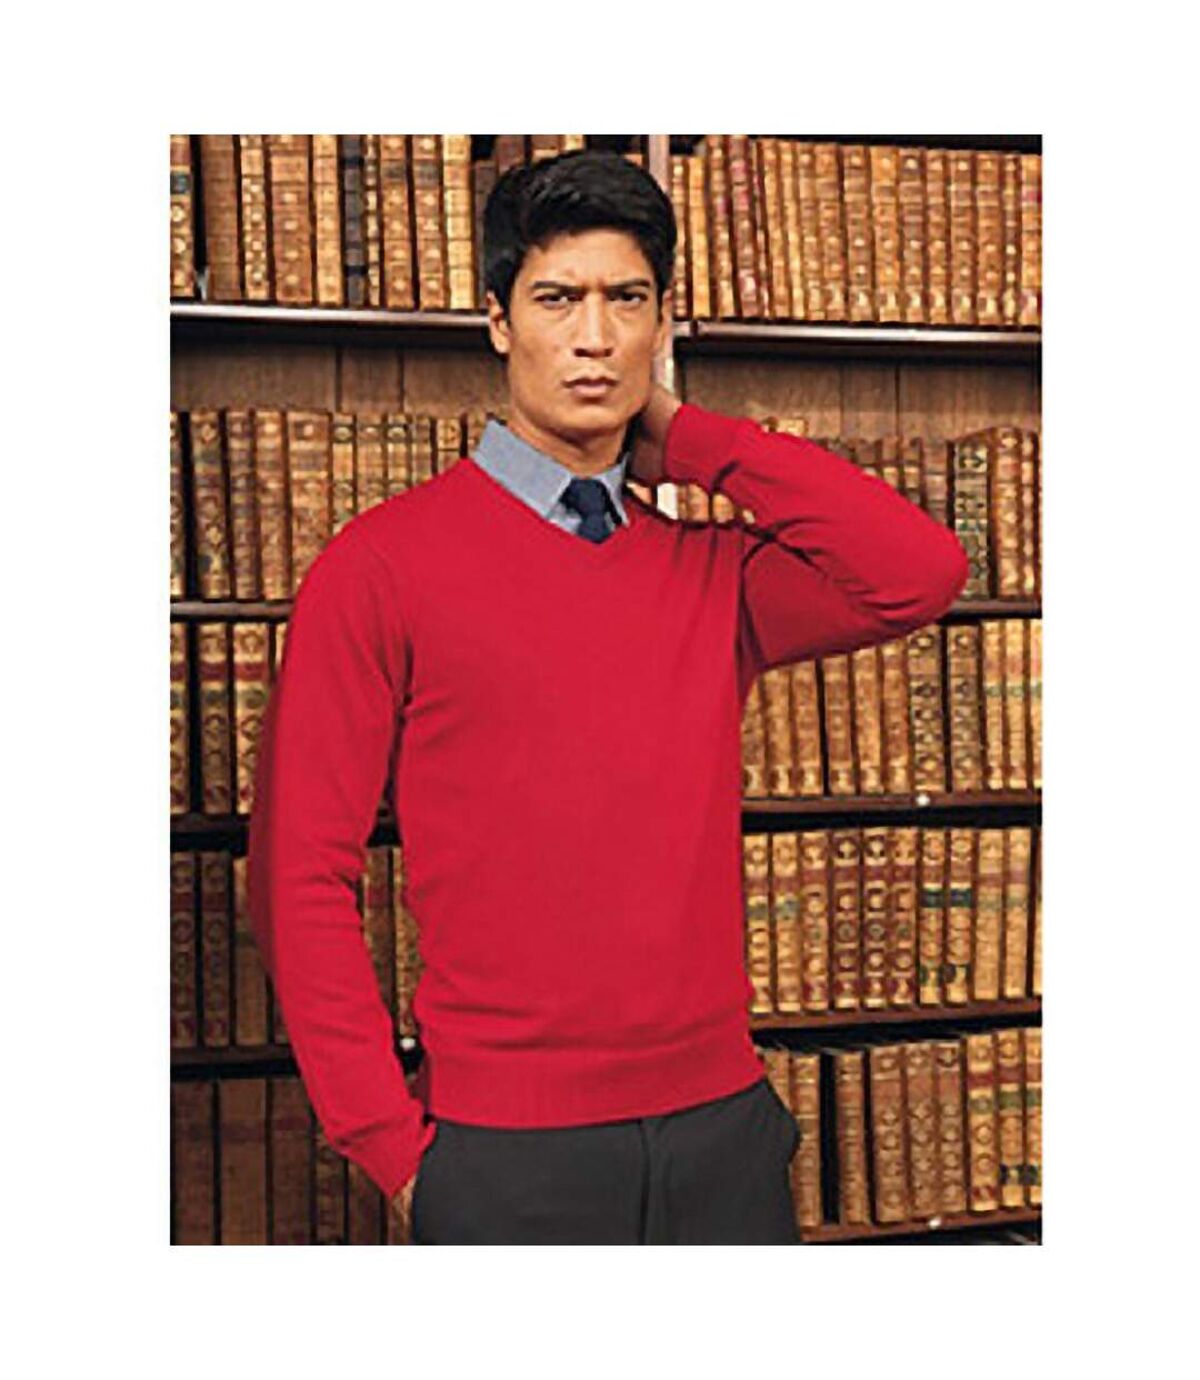 Premier Mens V-Neck Knitted Sweater (Red) - UTRW1131